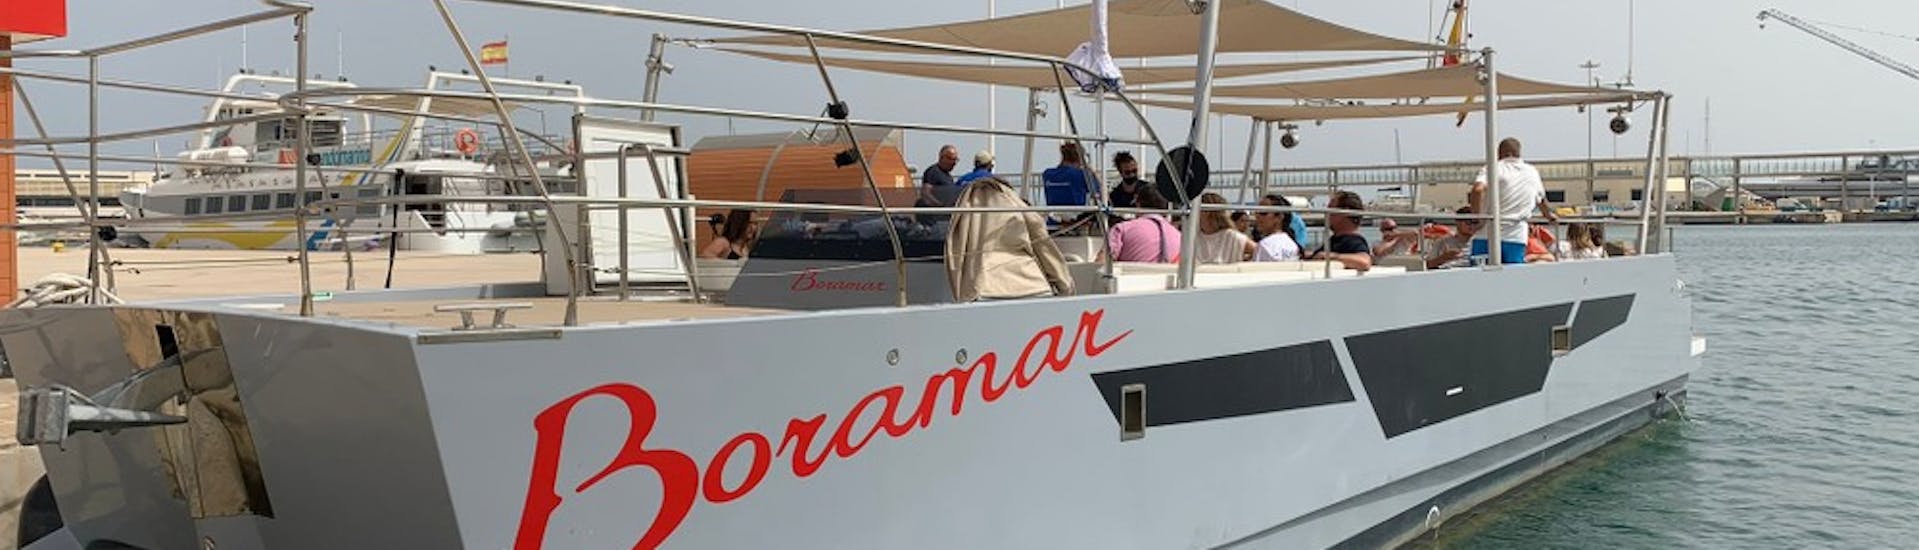 Our catamaran during a Catamaran Trip to Cova Tallada in Denia with Boramar Denia.